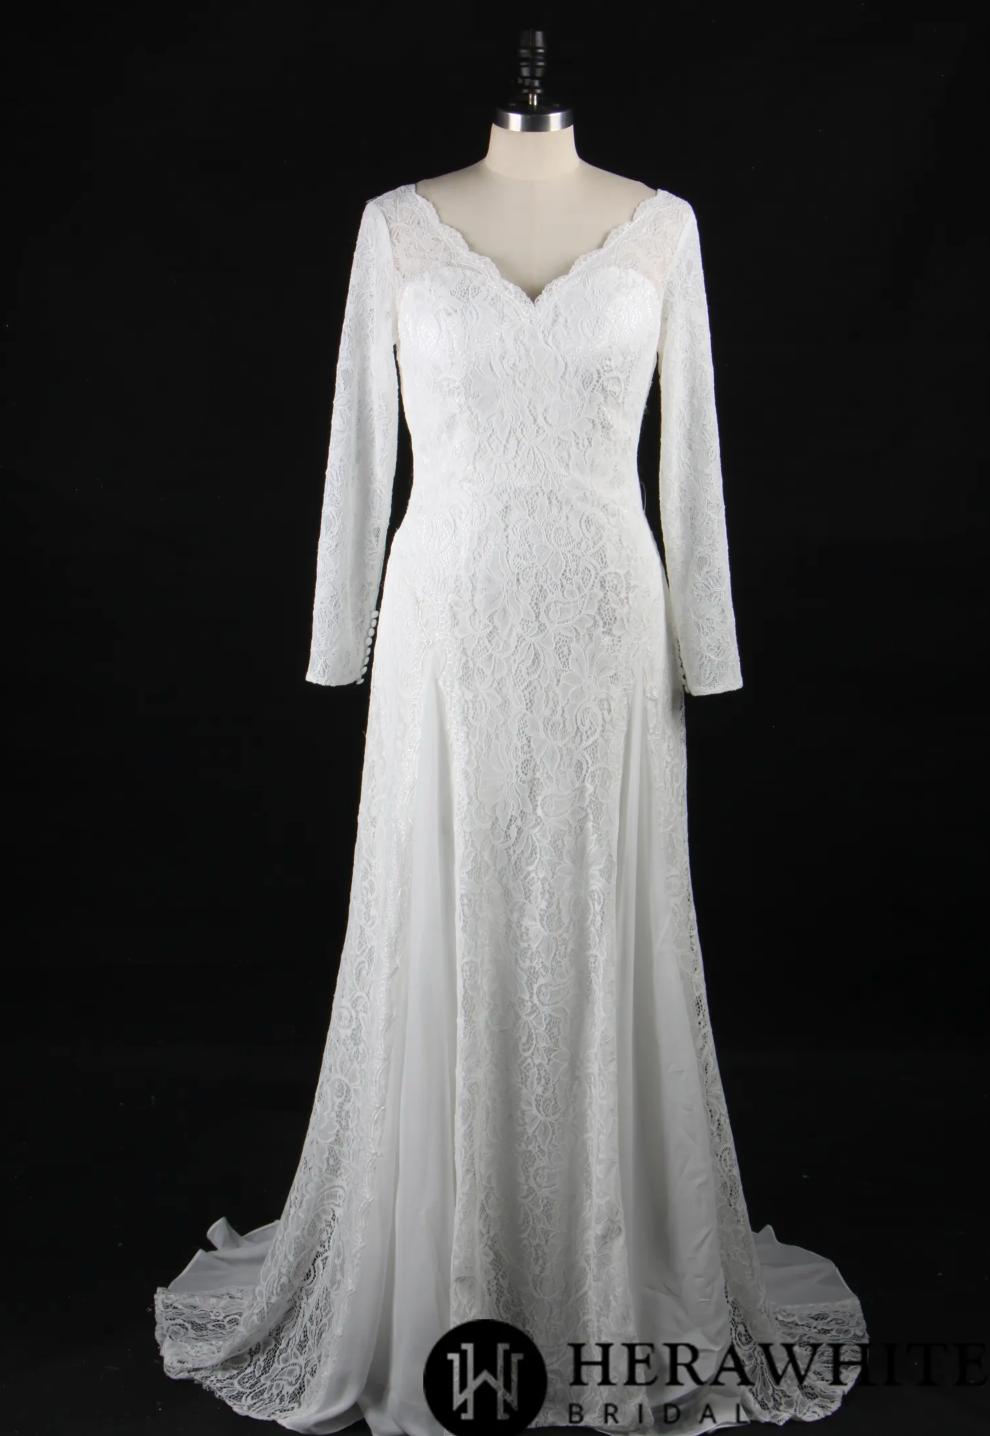 Elegant Illusion Long Sleeve Lace Wedding Dress